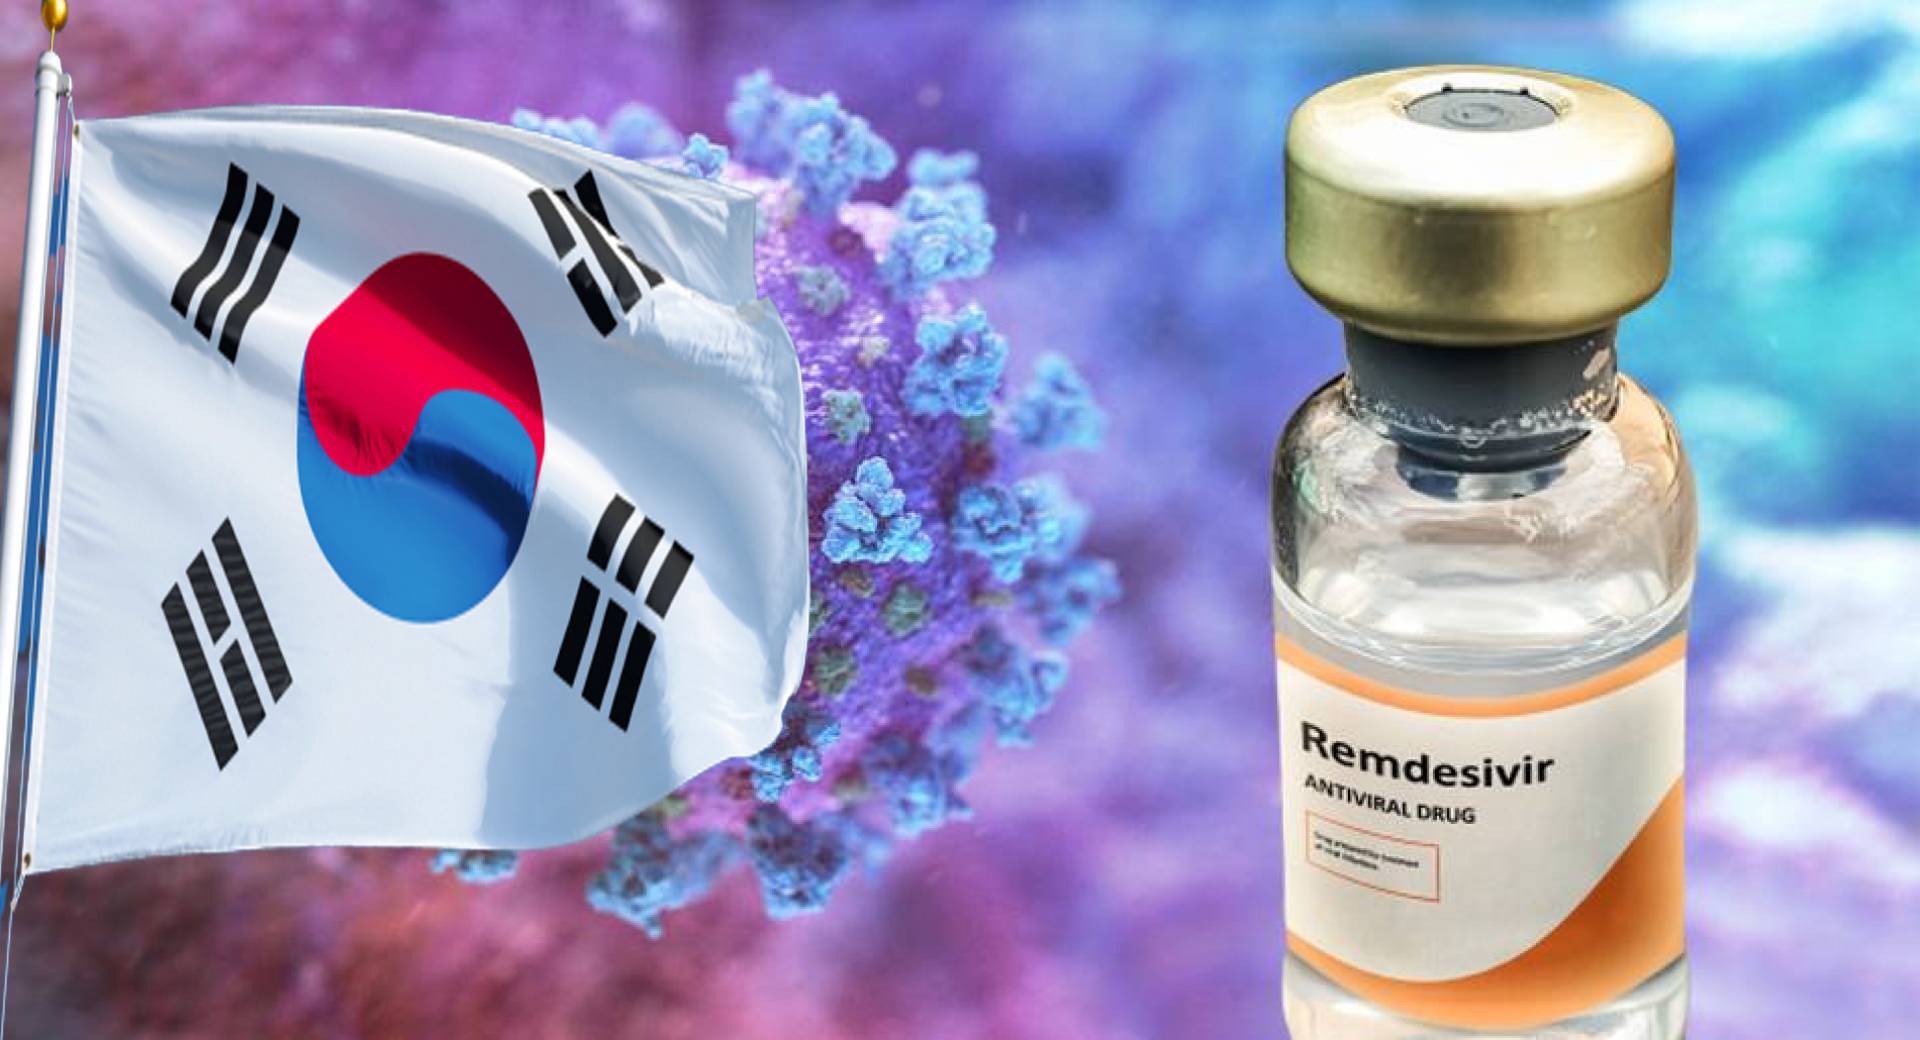 كوريا الجنوبية تطلب عقار «ريمديسيفير».. بعد ظهور إصابات جديدة  